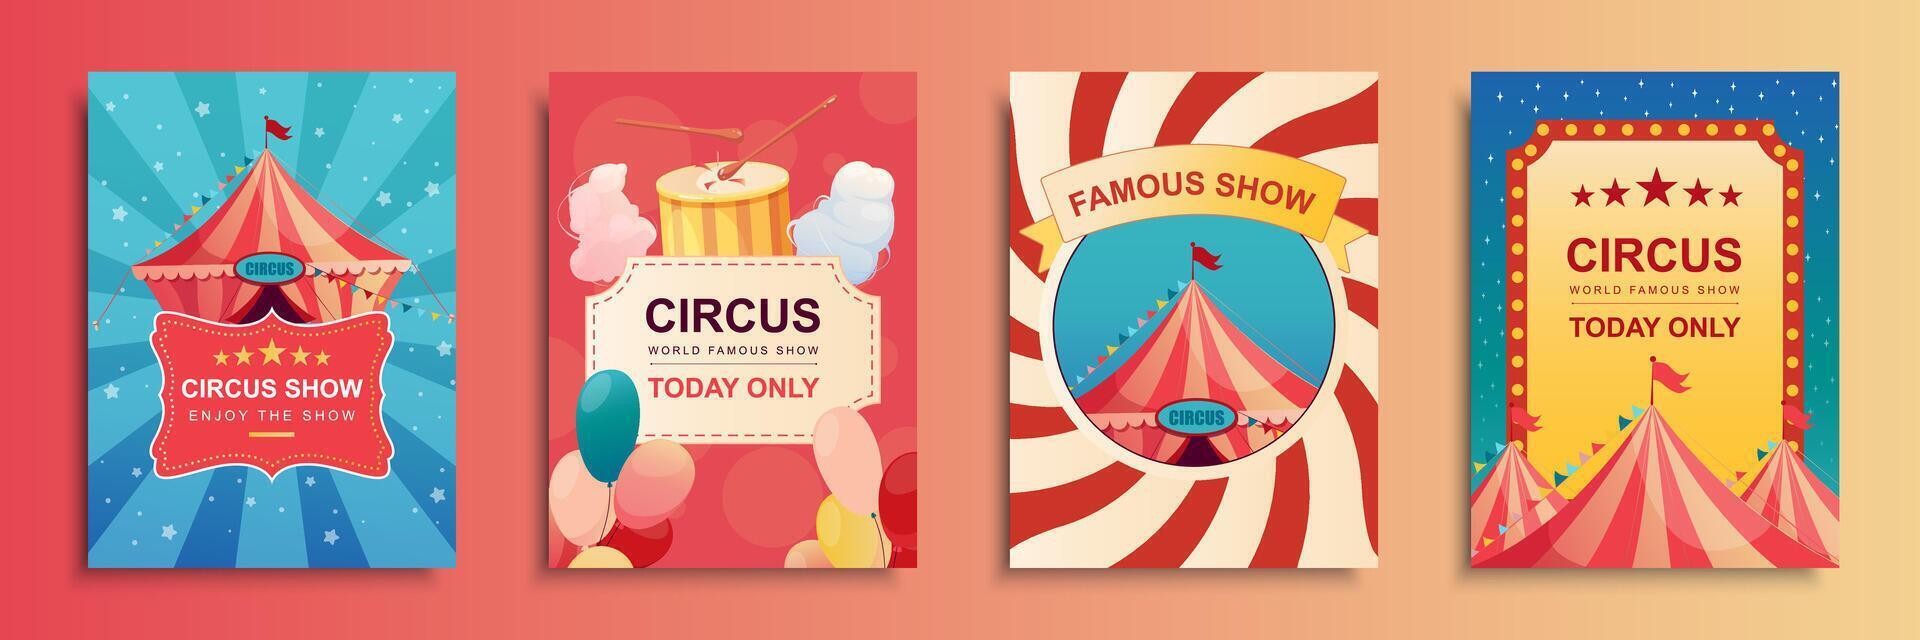 cirkus visa omslag broschyr uppsättning i platt design. affisch mallar med randig tält för akrobat, clown eller trollkarl konst föreställningar, ballonger, bomull godis, karneval biljetter. vektor illustration.